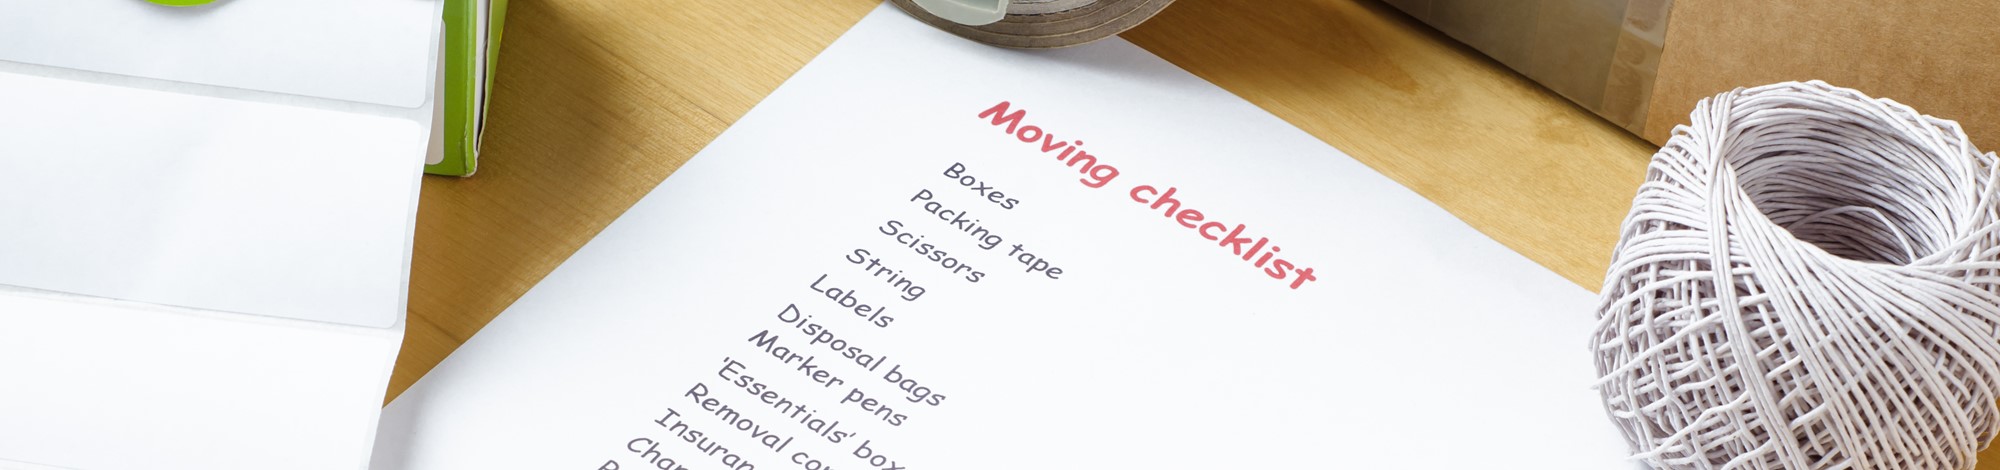 pre moving checklist